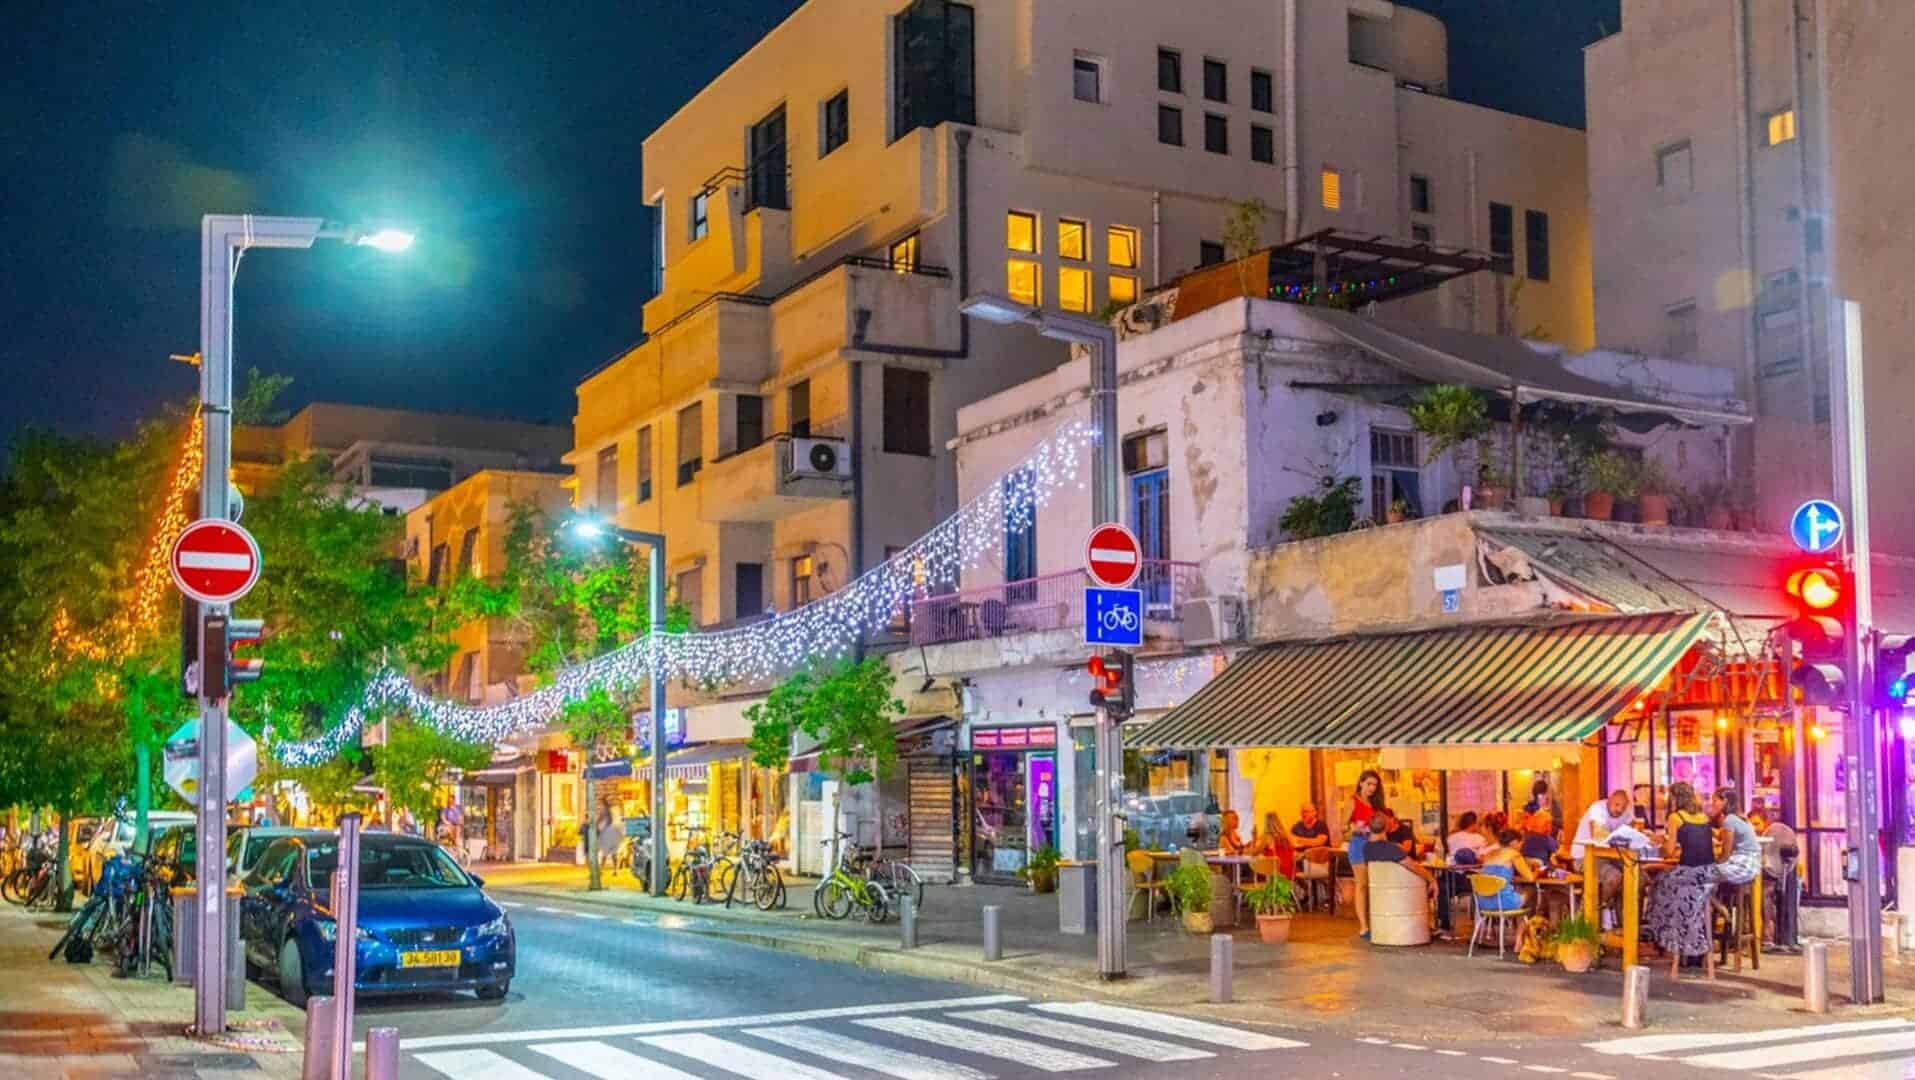 Tel Aviv Nightlife 2019